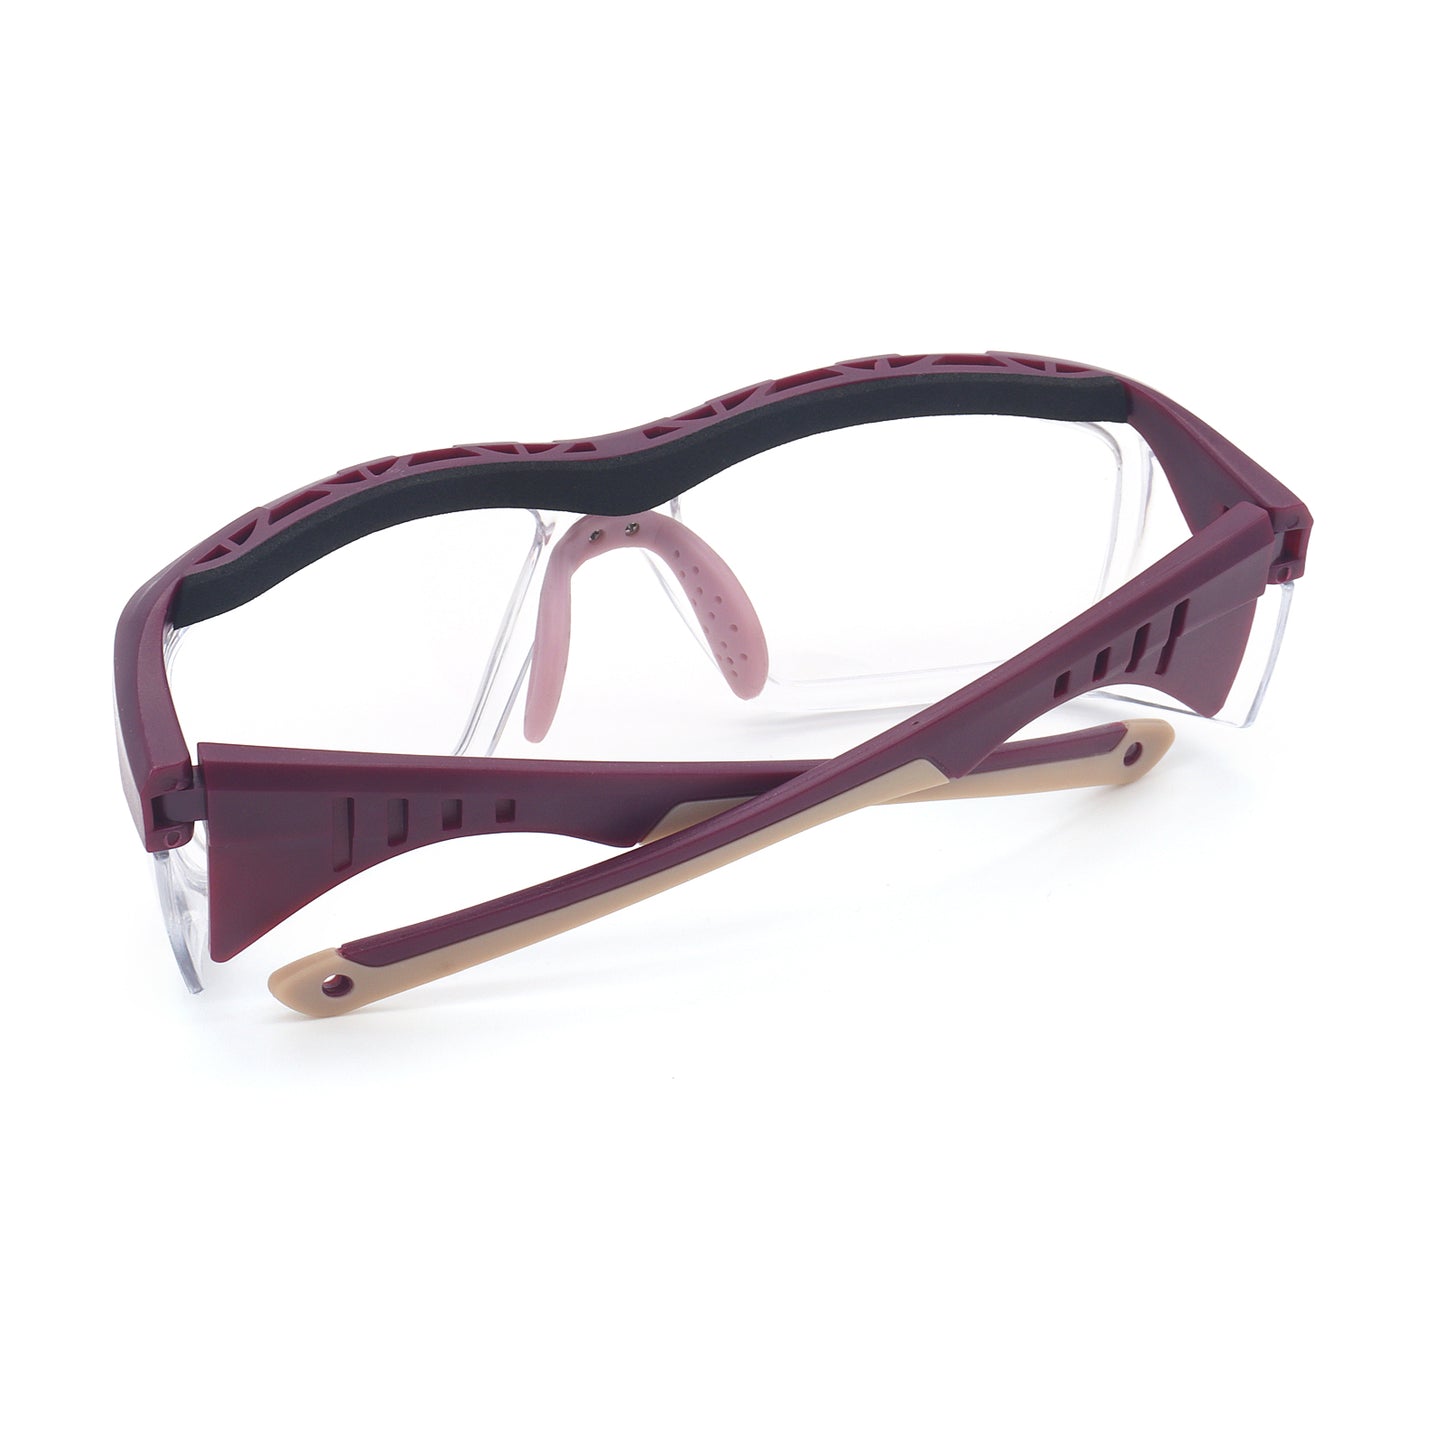 EYESafety Clear Prescription Safety Glasses Eyewear